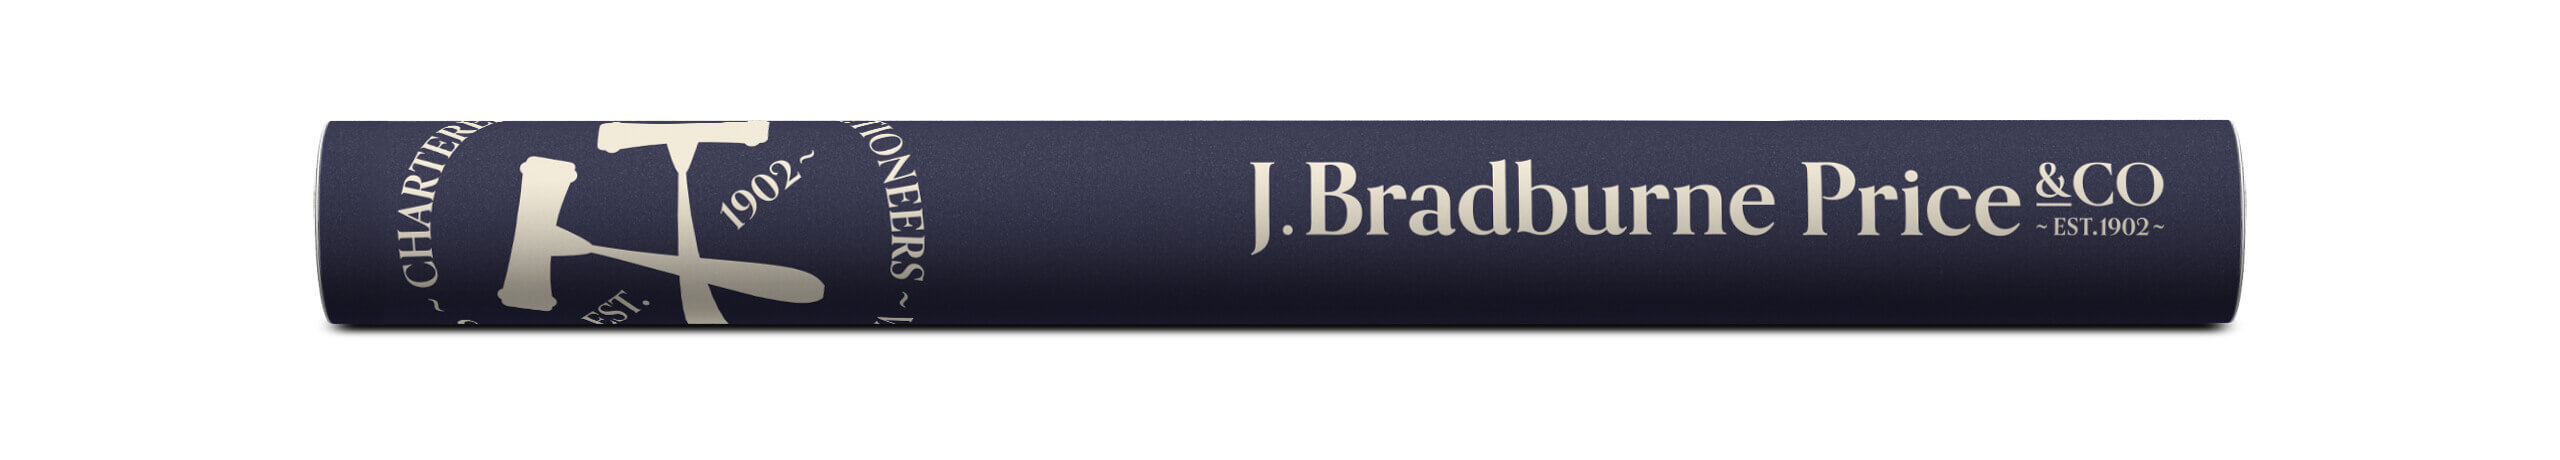 J Bradburne Price & Co Presetation Tube Design